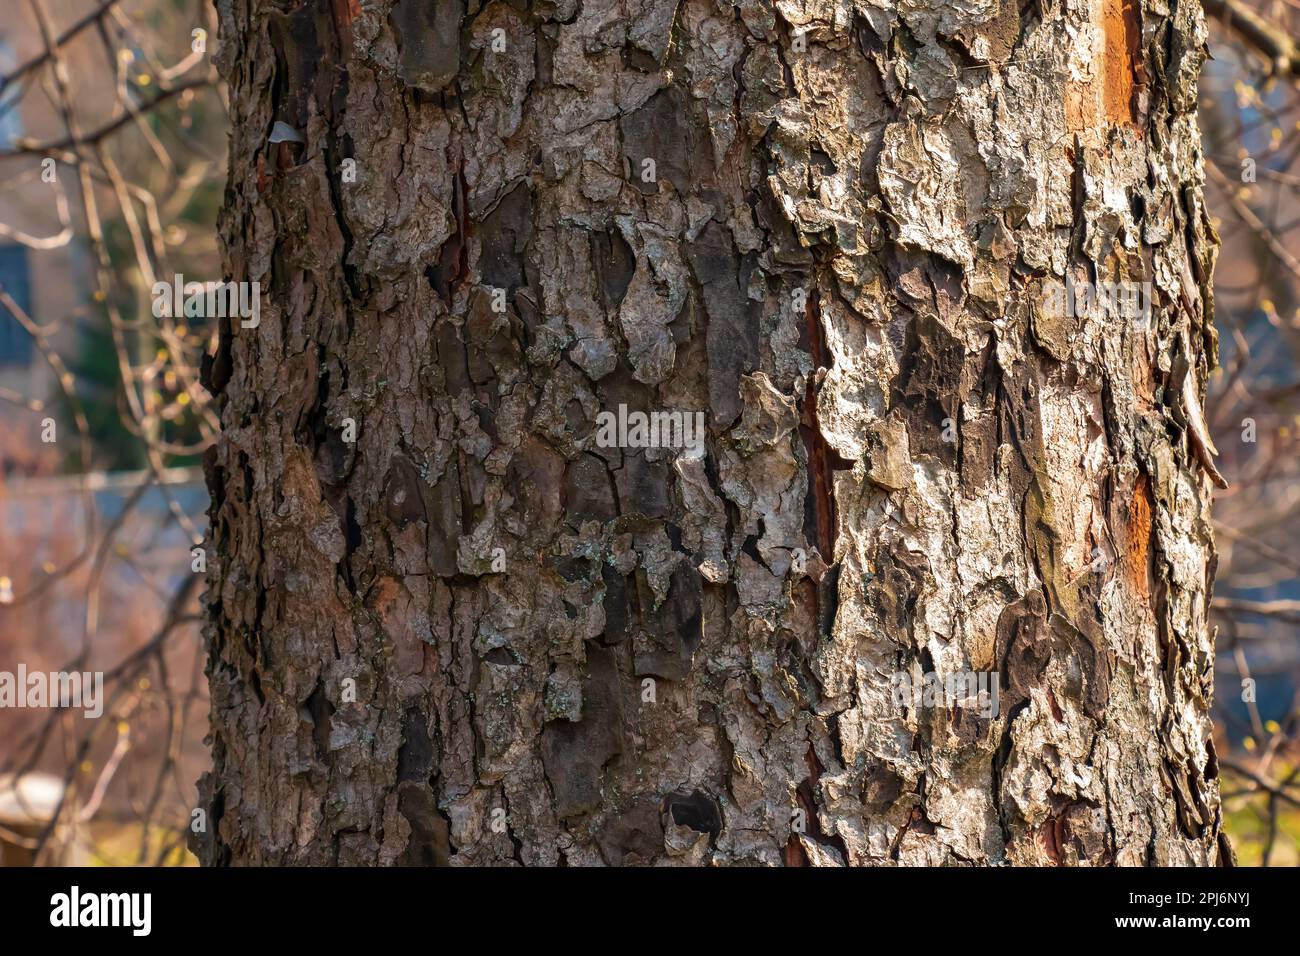 8 Ways to Identify a Tree by Its Bark